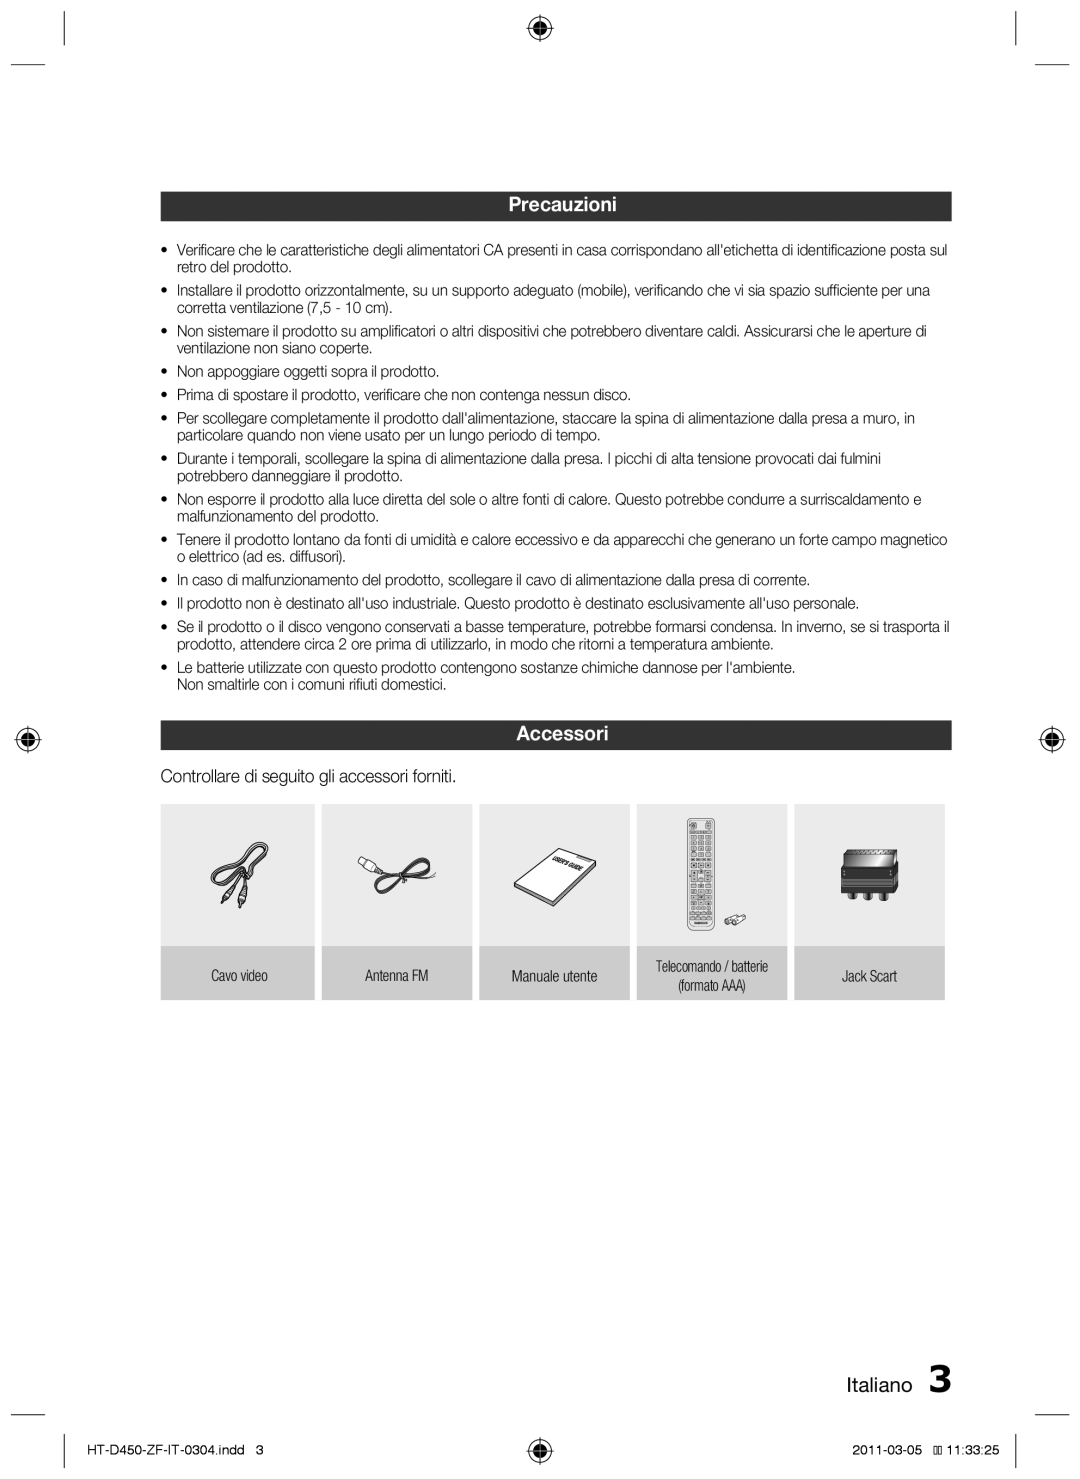 Samsung HT-D450, HT-D455, HT-D453 user manual Precauzioni, Accessori, Italiano  